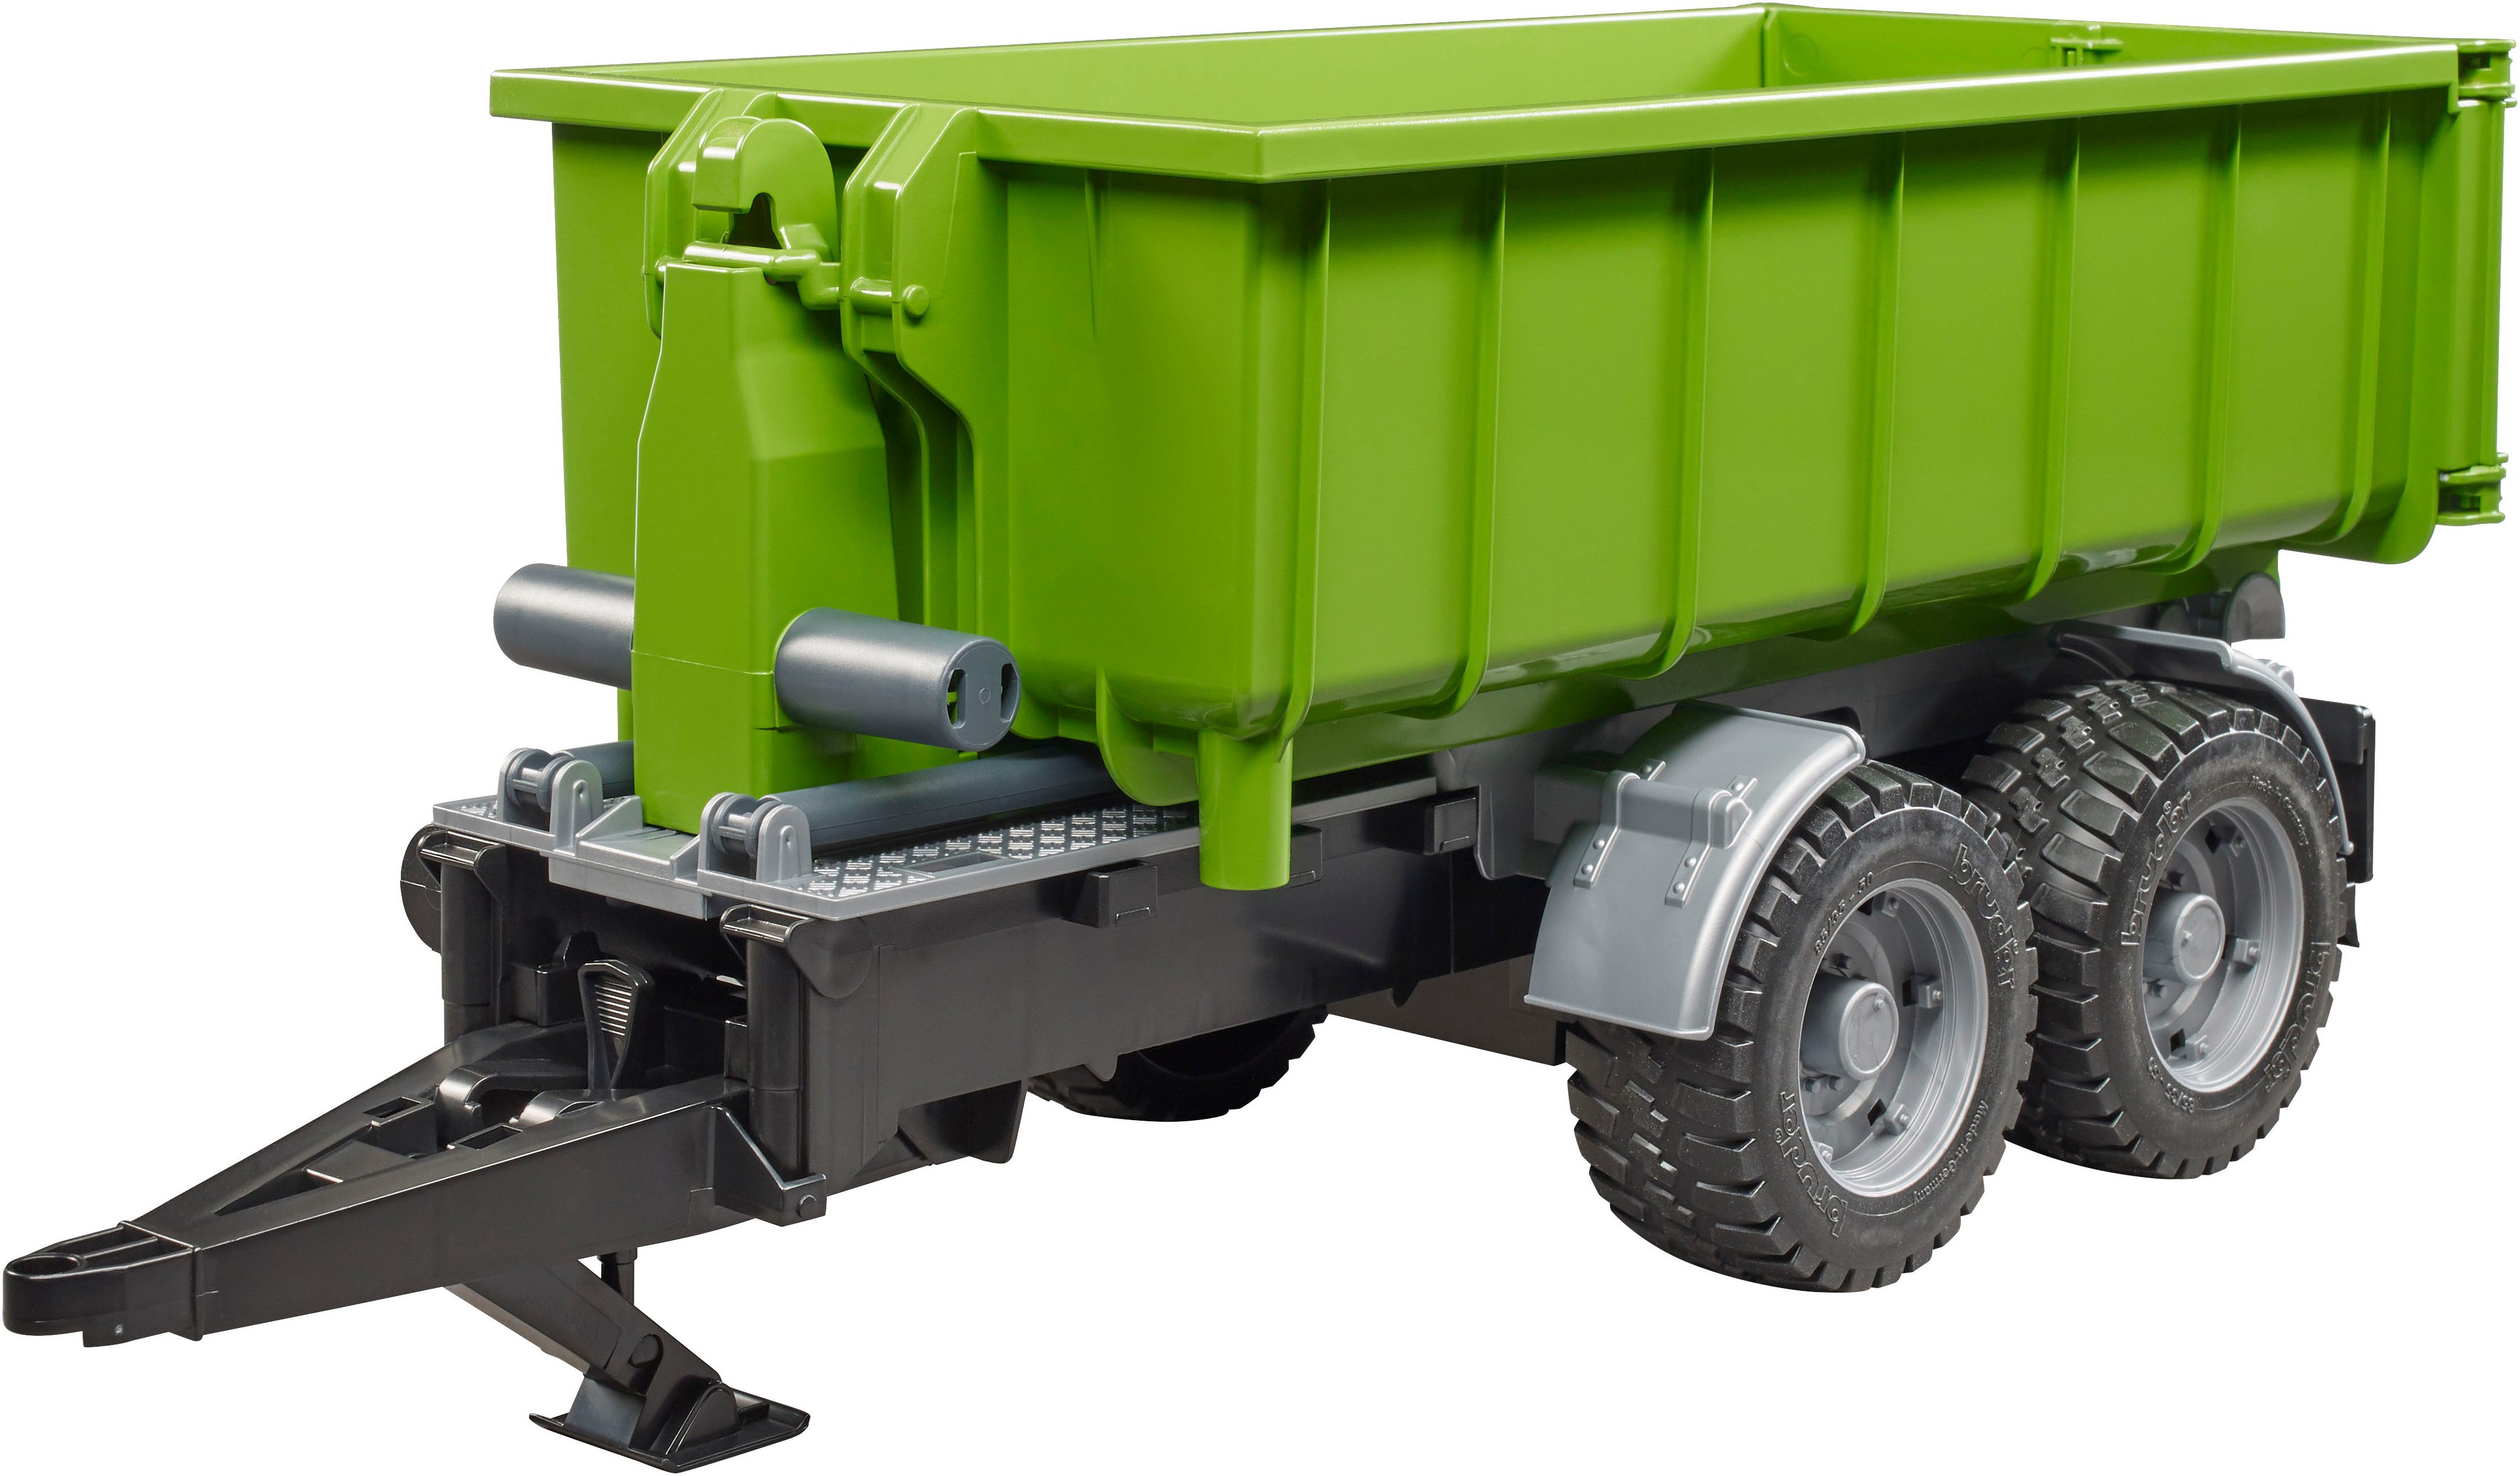 Bruder® Spielfahrzeug-Anhänger Hakenlift-Anhänger 50 cm für Traktoren (02035), Made in Europe